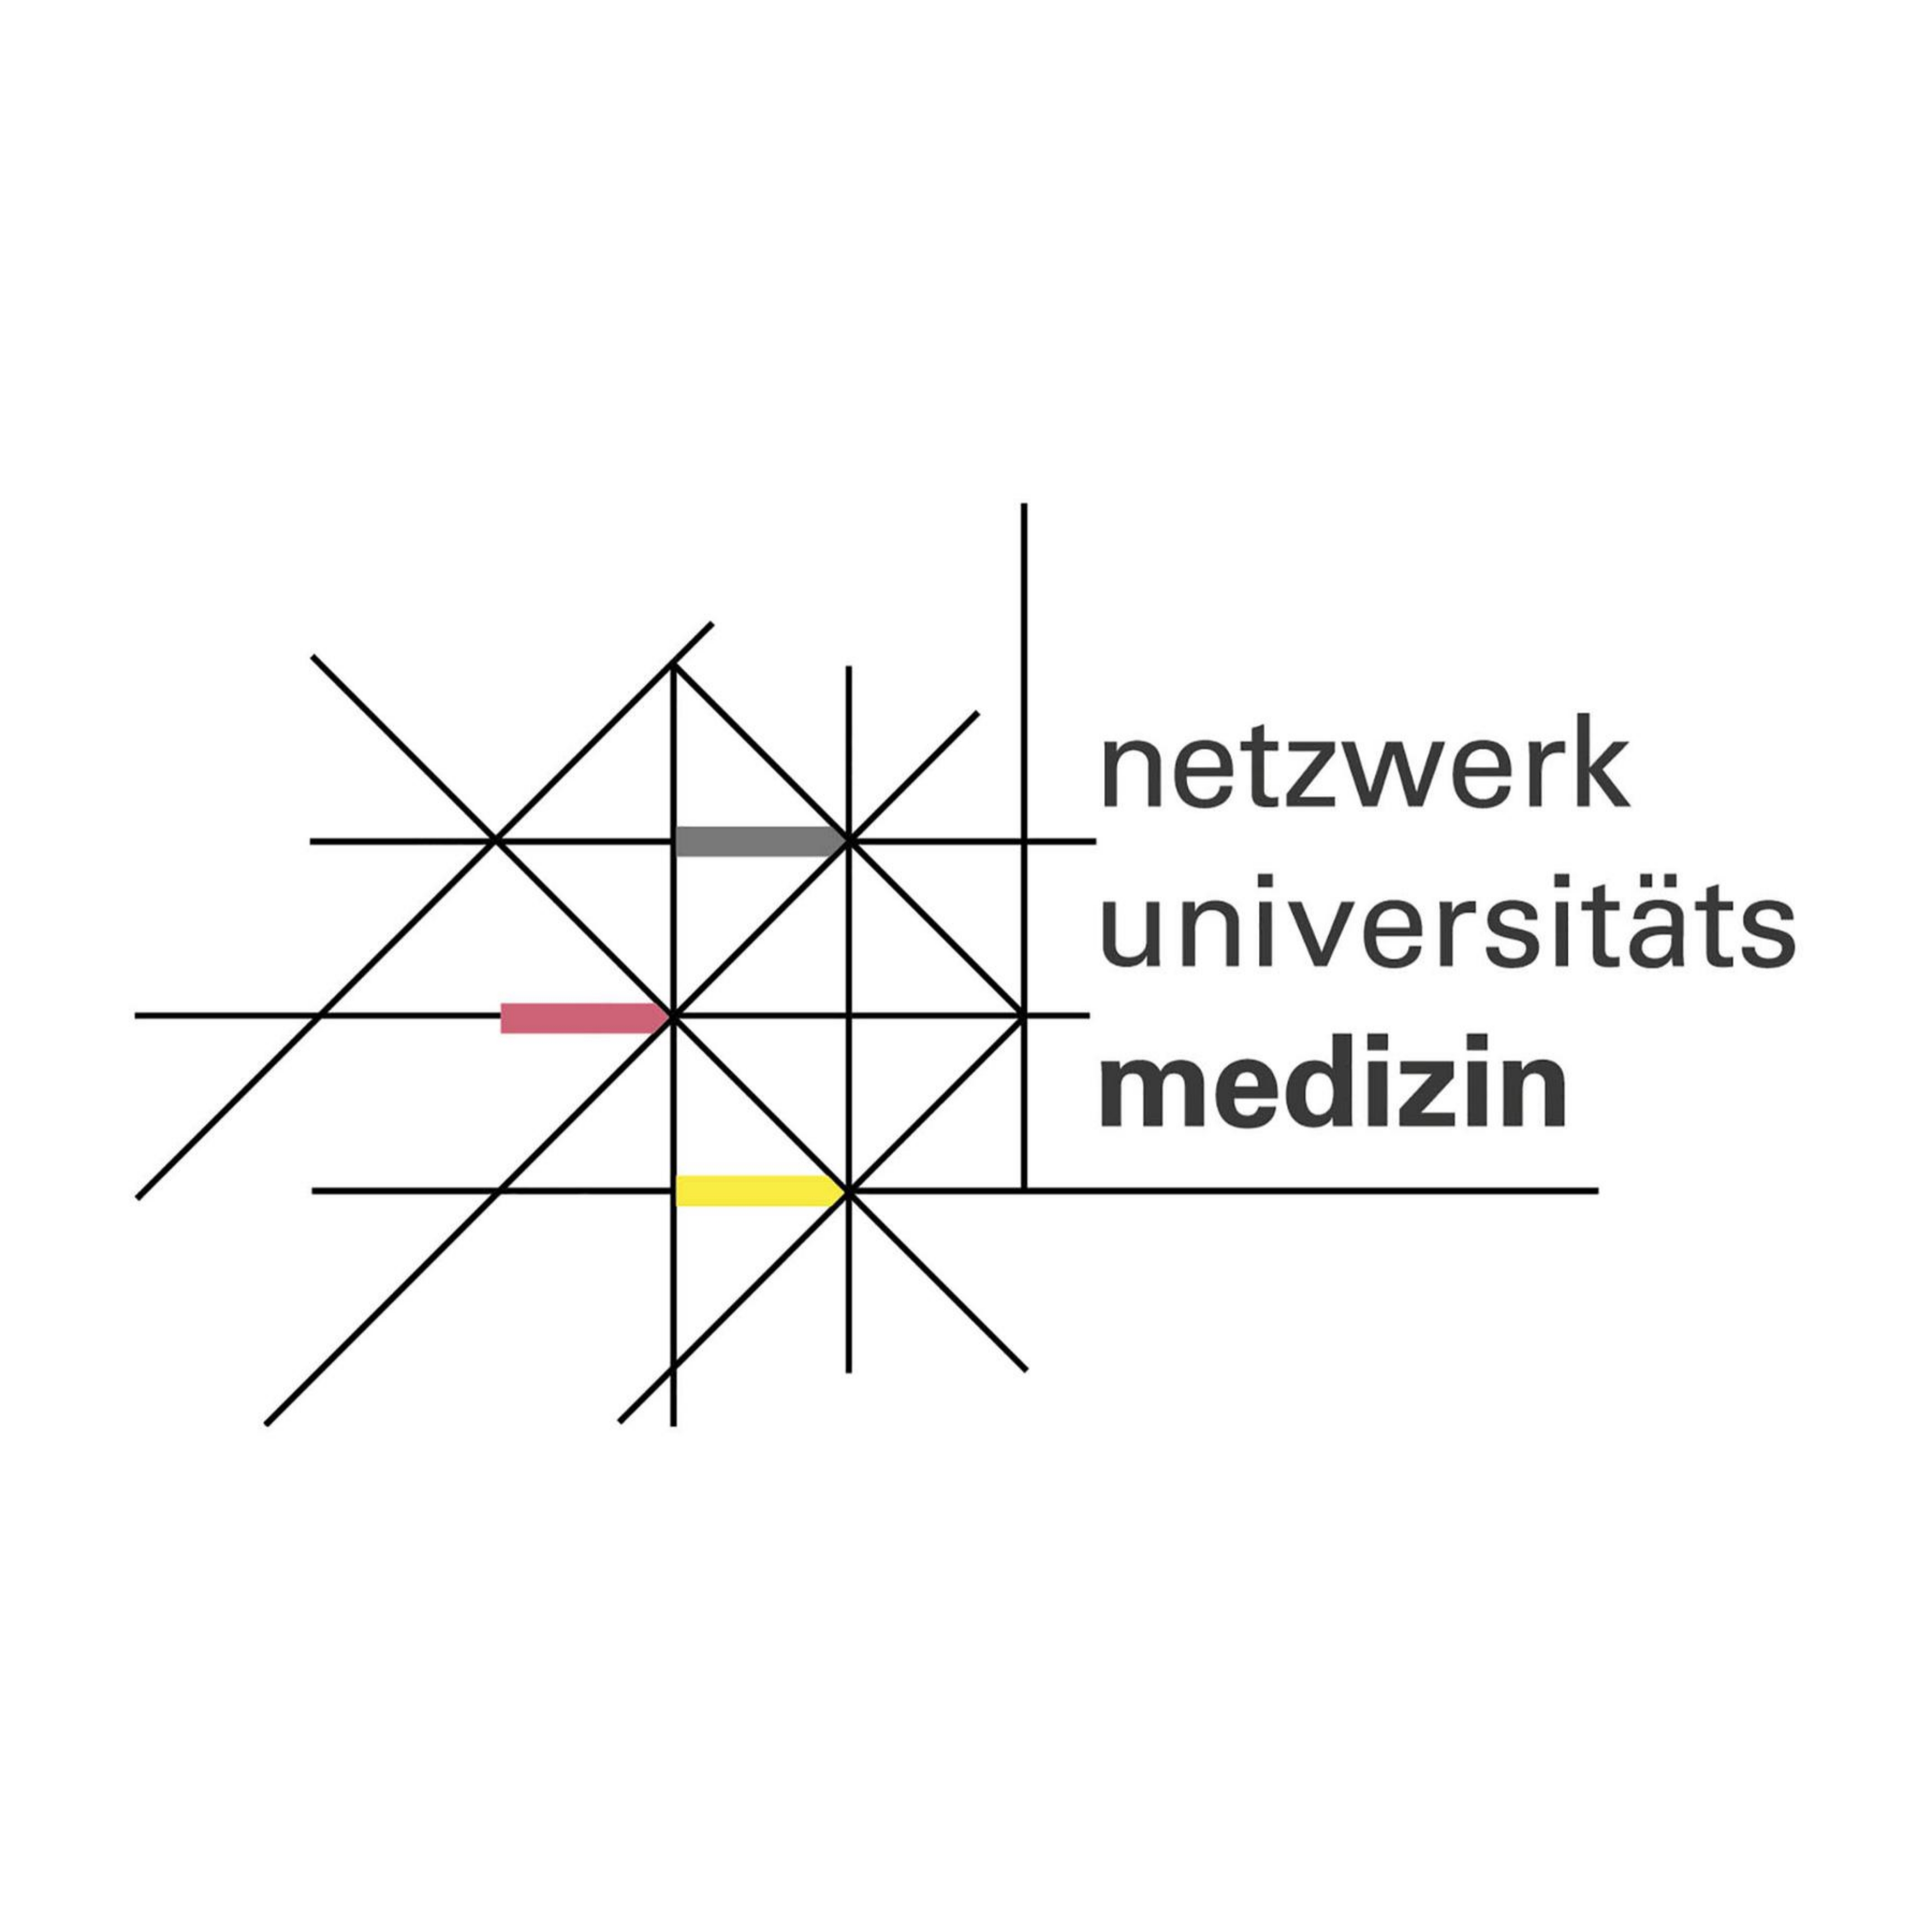 Zu sehen ist das Logo des Netzwerks Universitätsmedizin. Es handelt sich um eine Wort-Bild-Marke, die ein Netzwerk symbolisiert. 